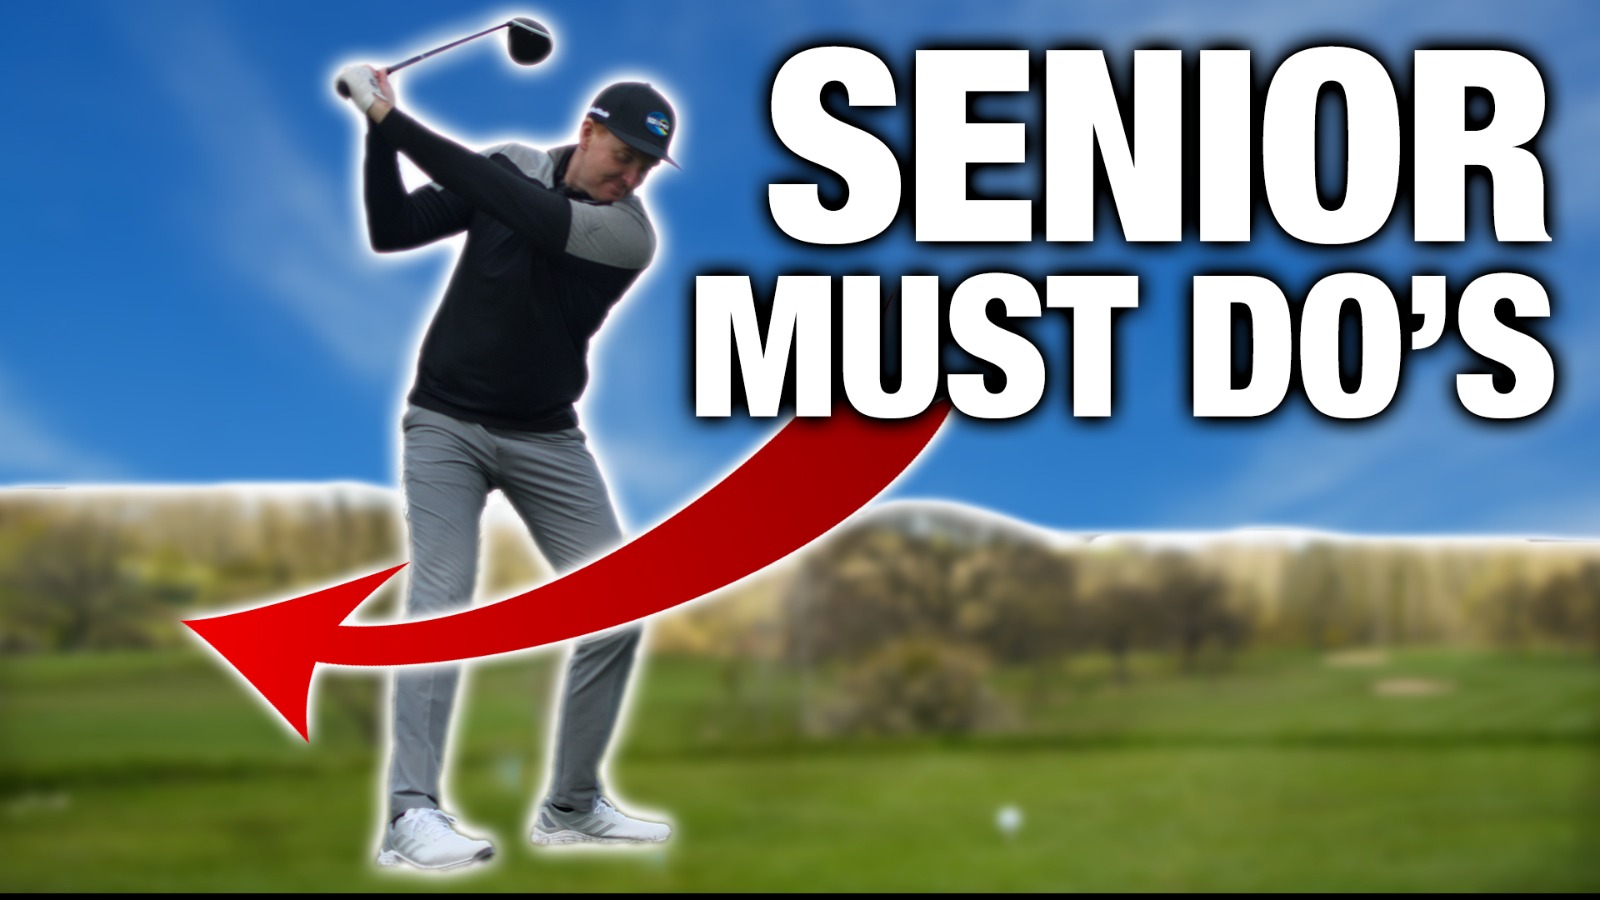 golf seniors tour rankings